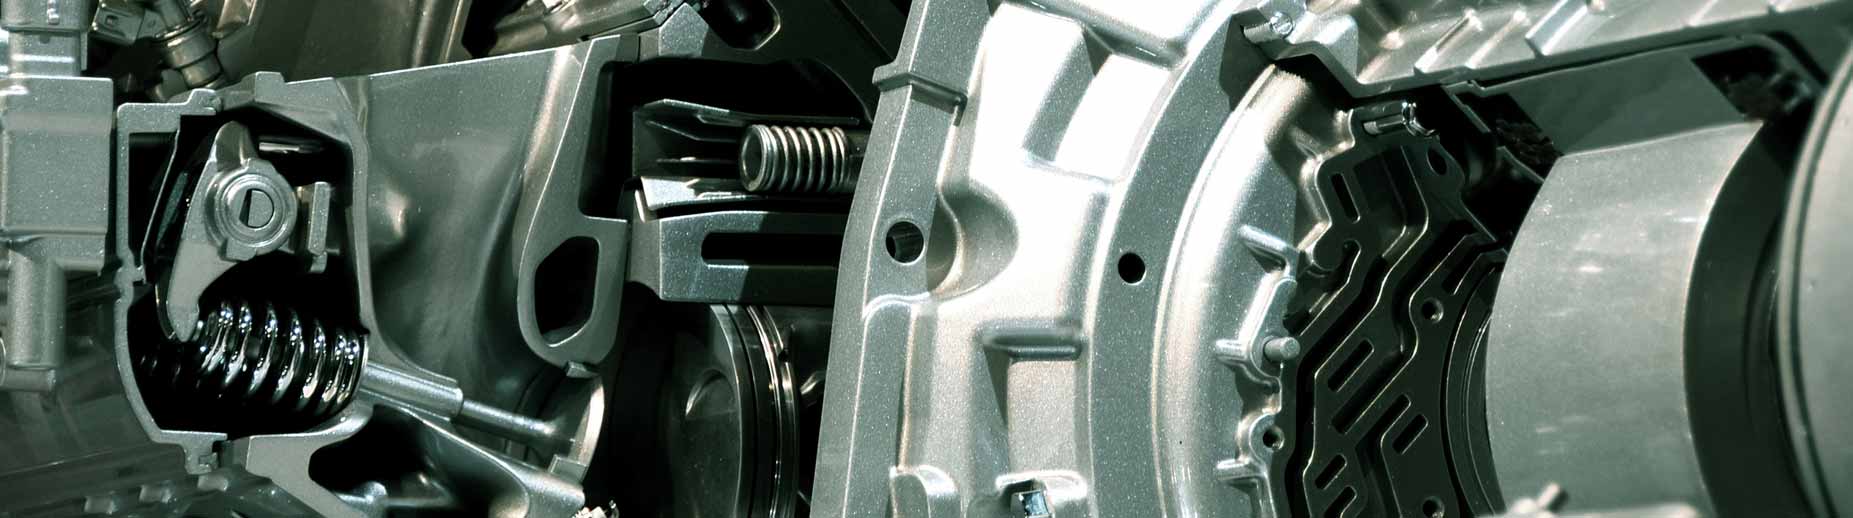 DeLand Transmission Repair, Auto Mechanic and Auto Repair